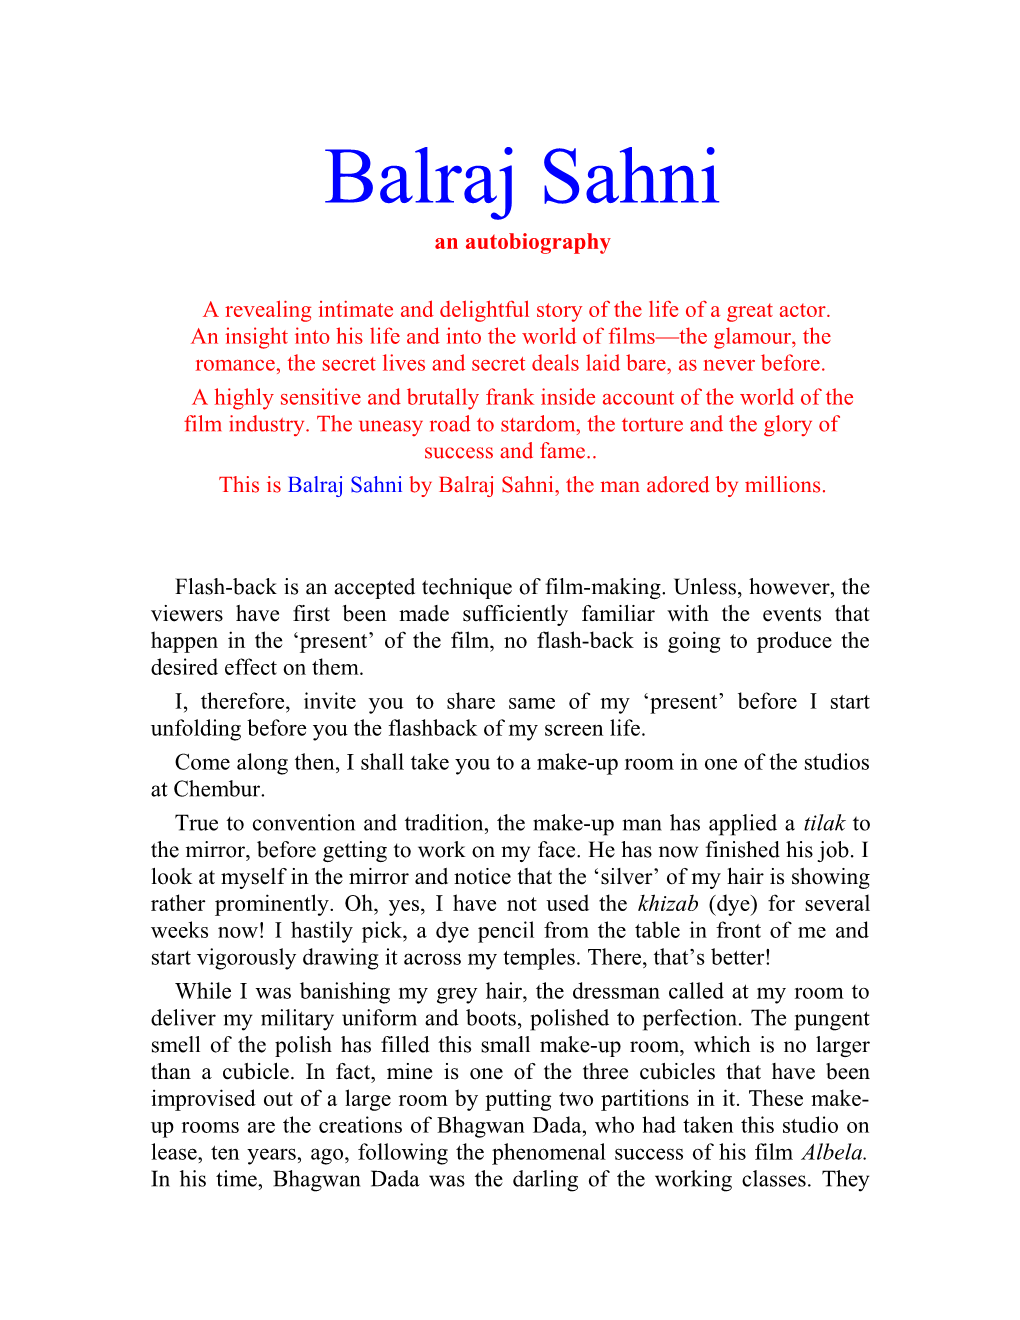 This Is Balraj Sahni by Balraj Sahni, the Man Adored by Millions